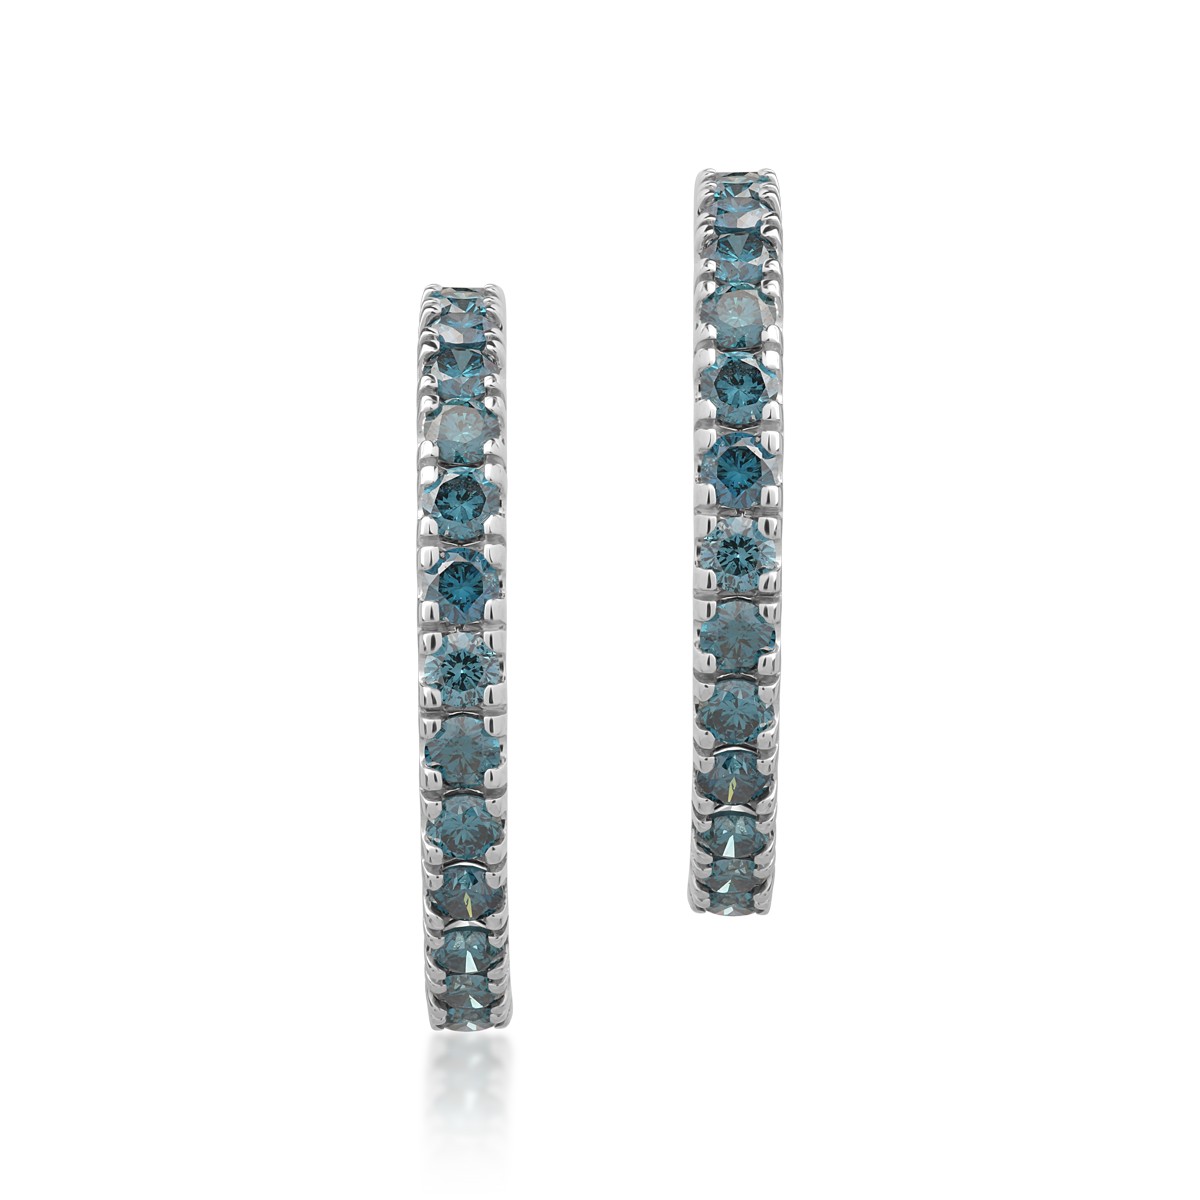 18K fehérarany fülbevaló 1.1ct kék gyémántokkal